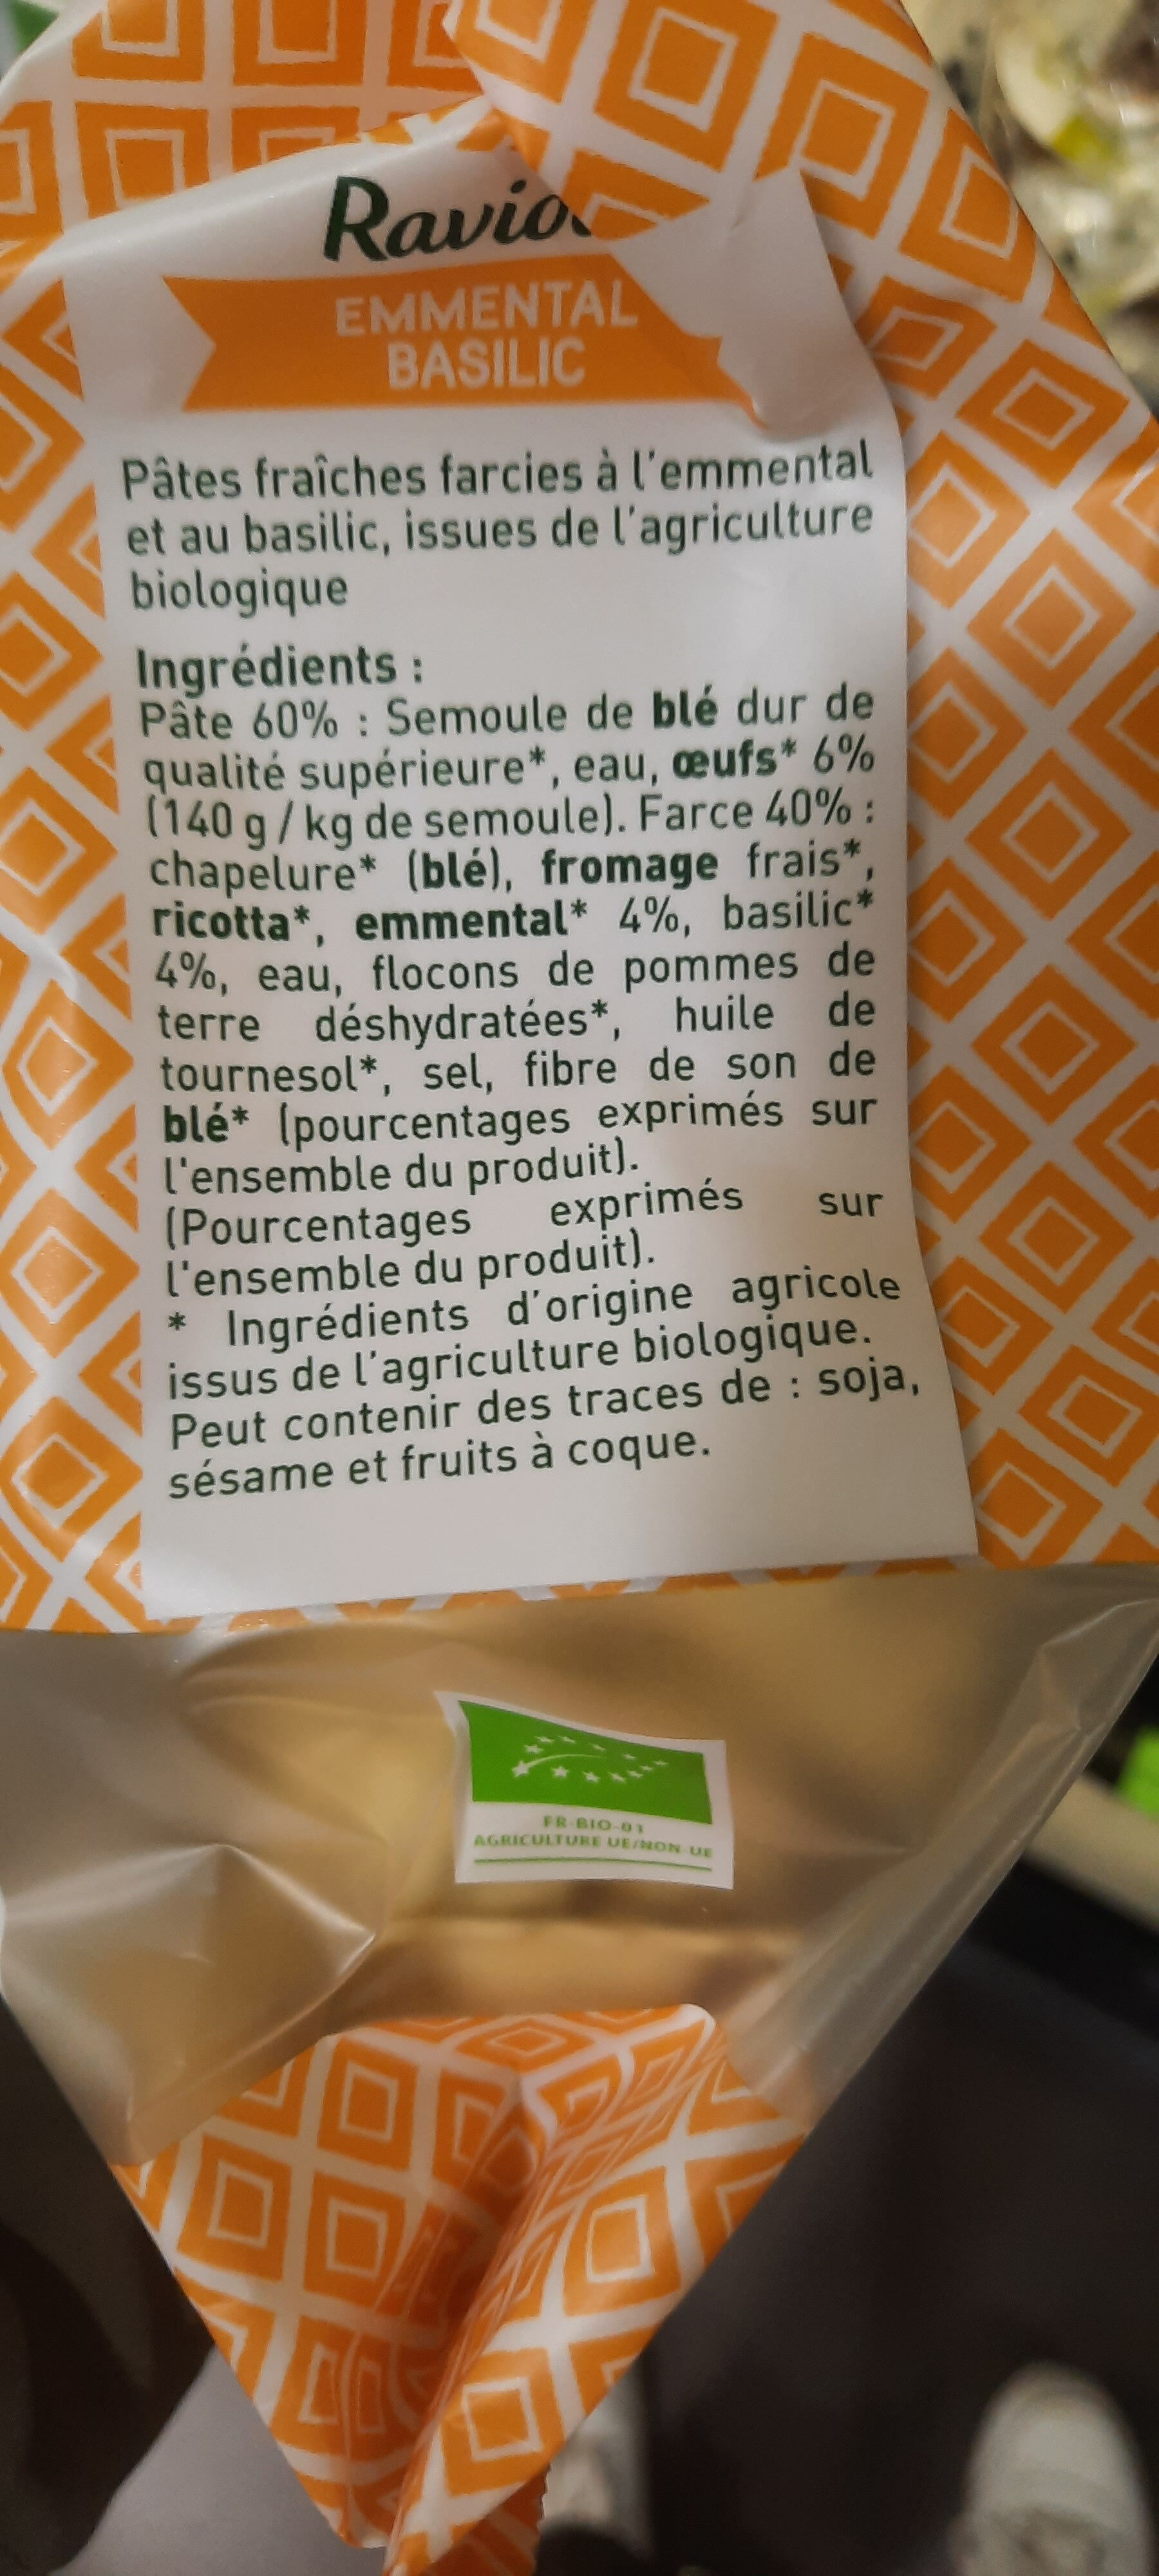 Ravioli Emmental basilic - Ingredientes - fr